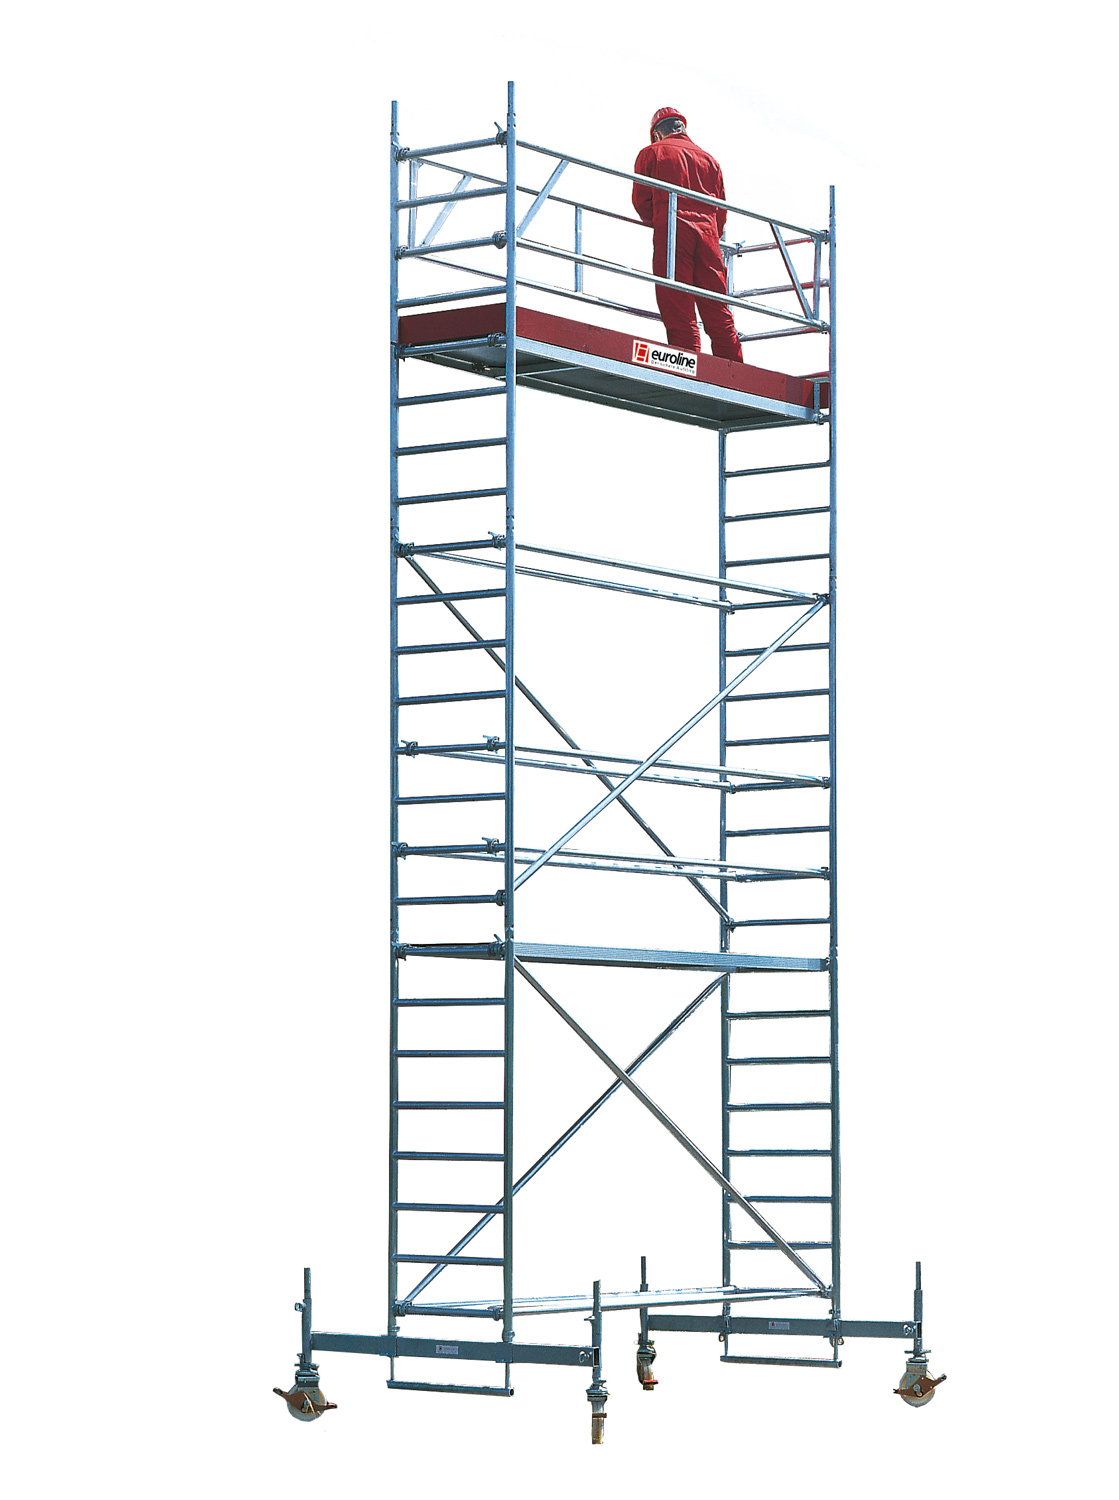 Gerüsttyp 9521 mit Sicherheitsaufbau - Arbeitshöhe 3,15 m